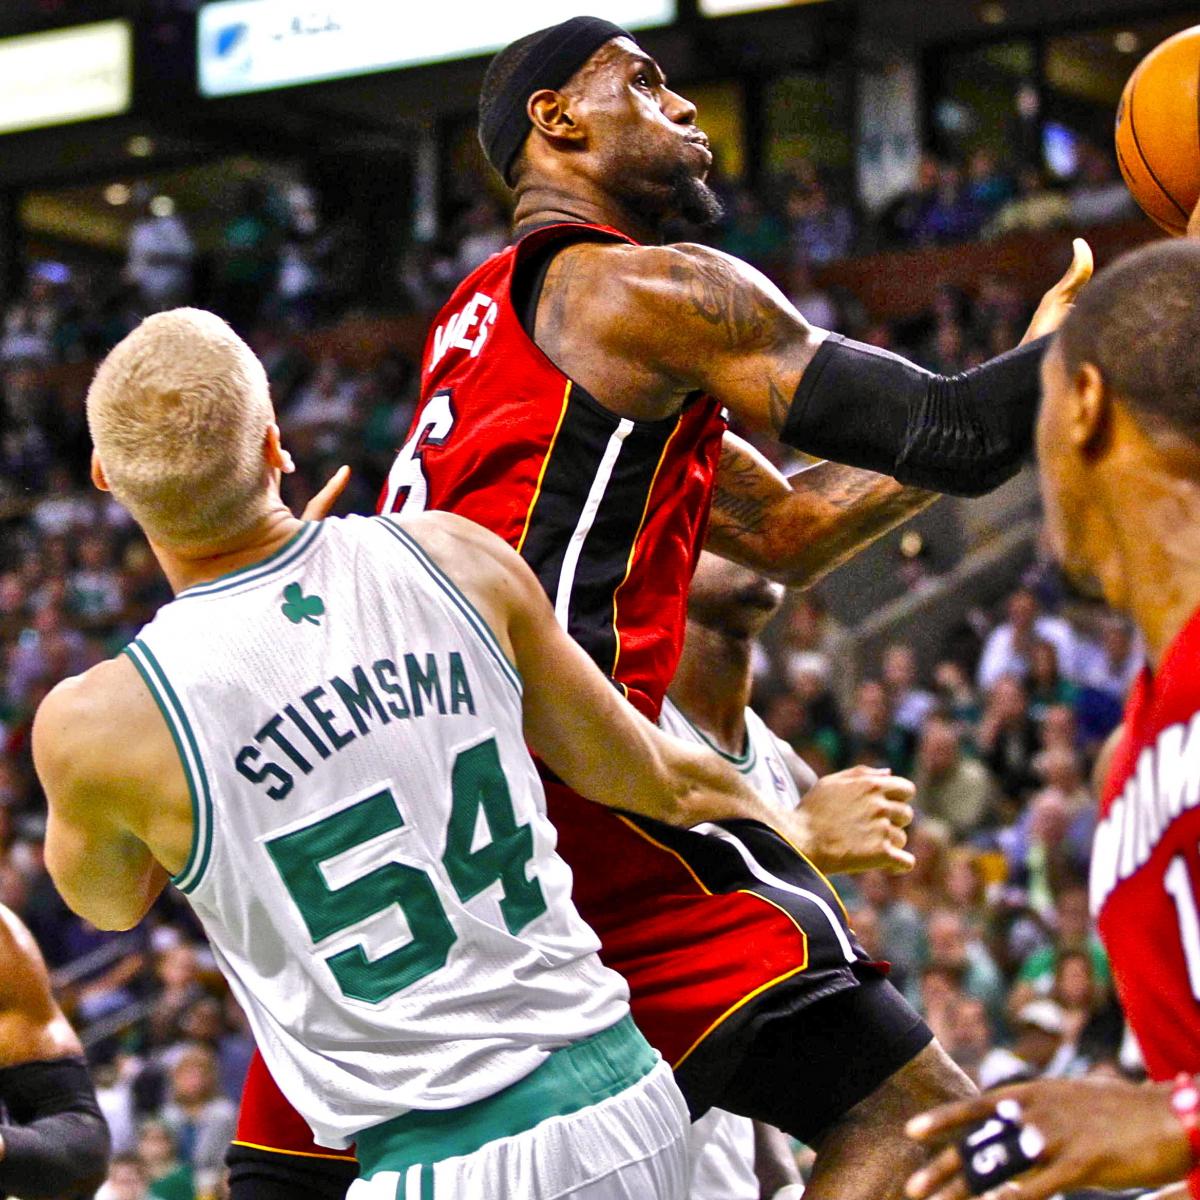 Miami Heat vs. Boston Celtics Game 6 Live Score, Analysis and Reaction